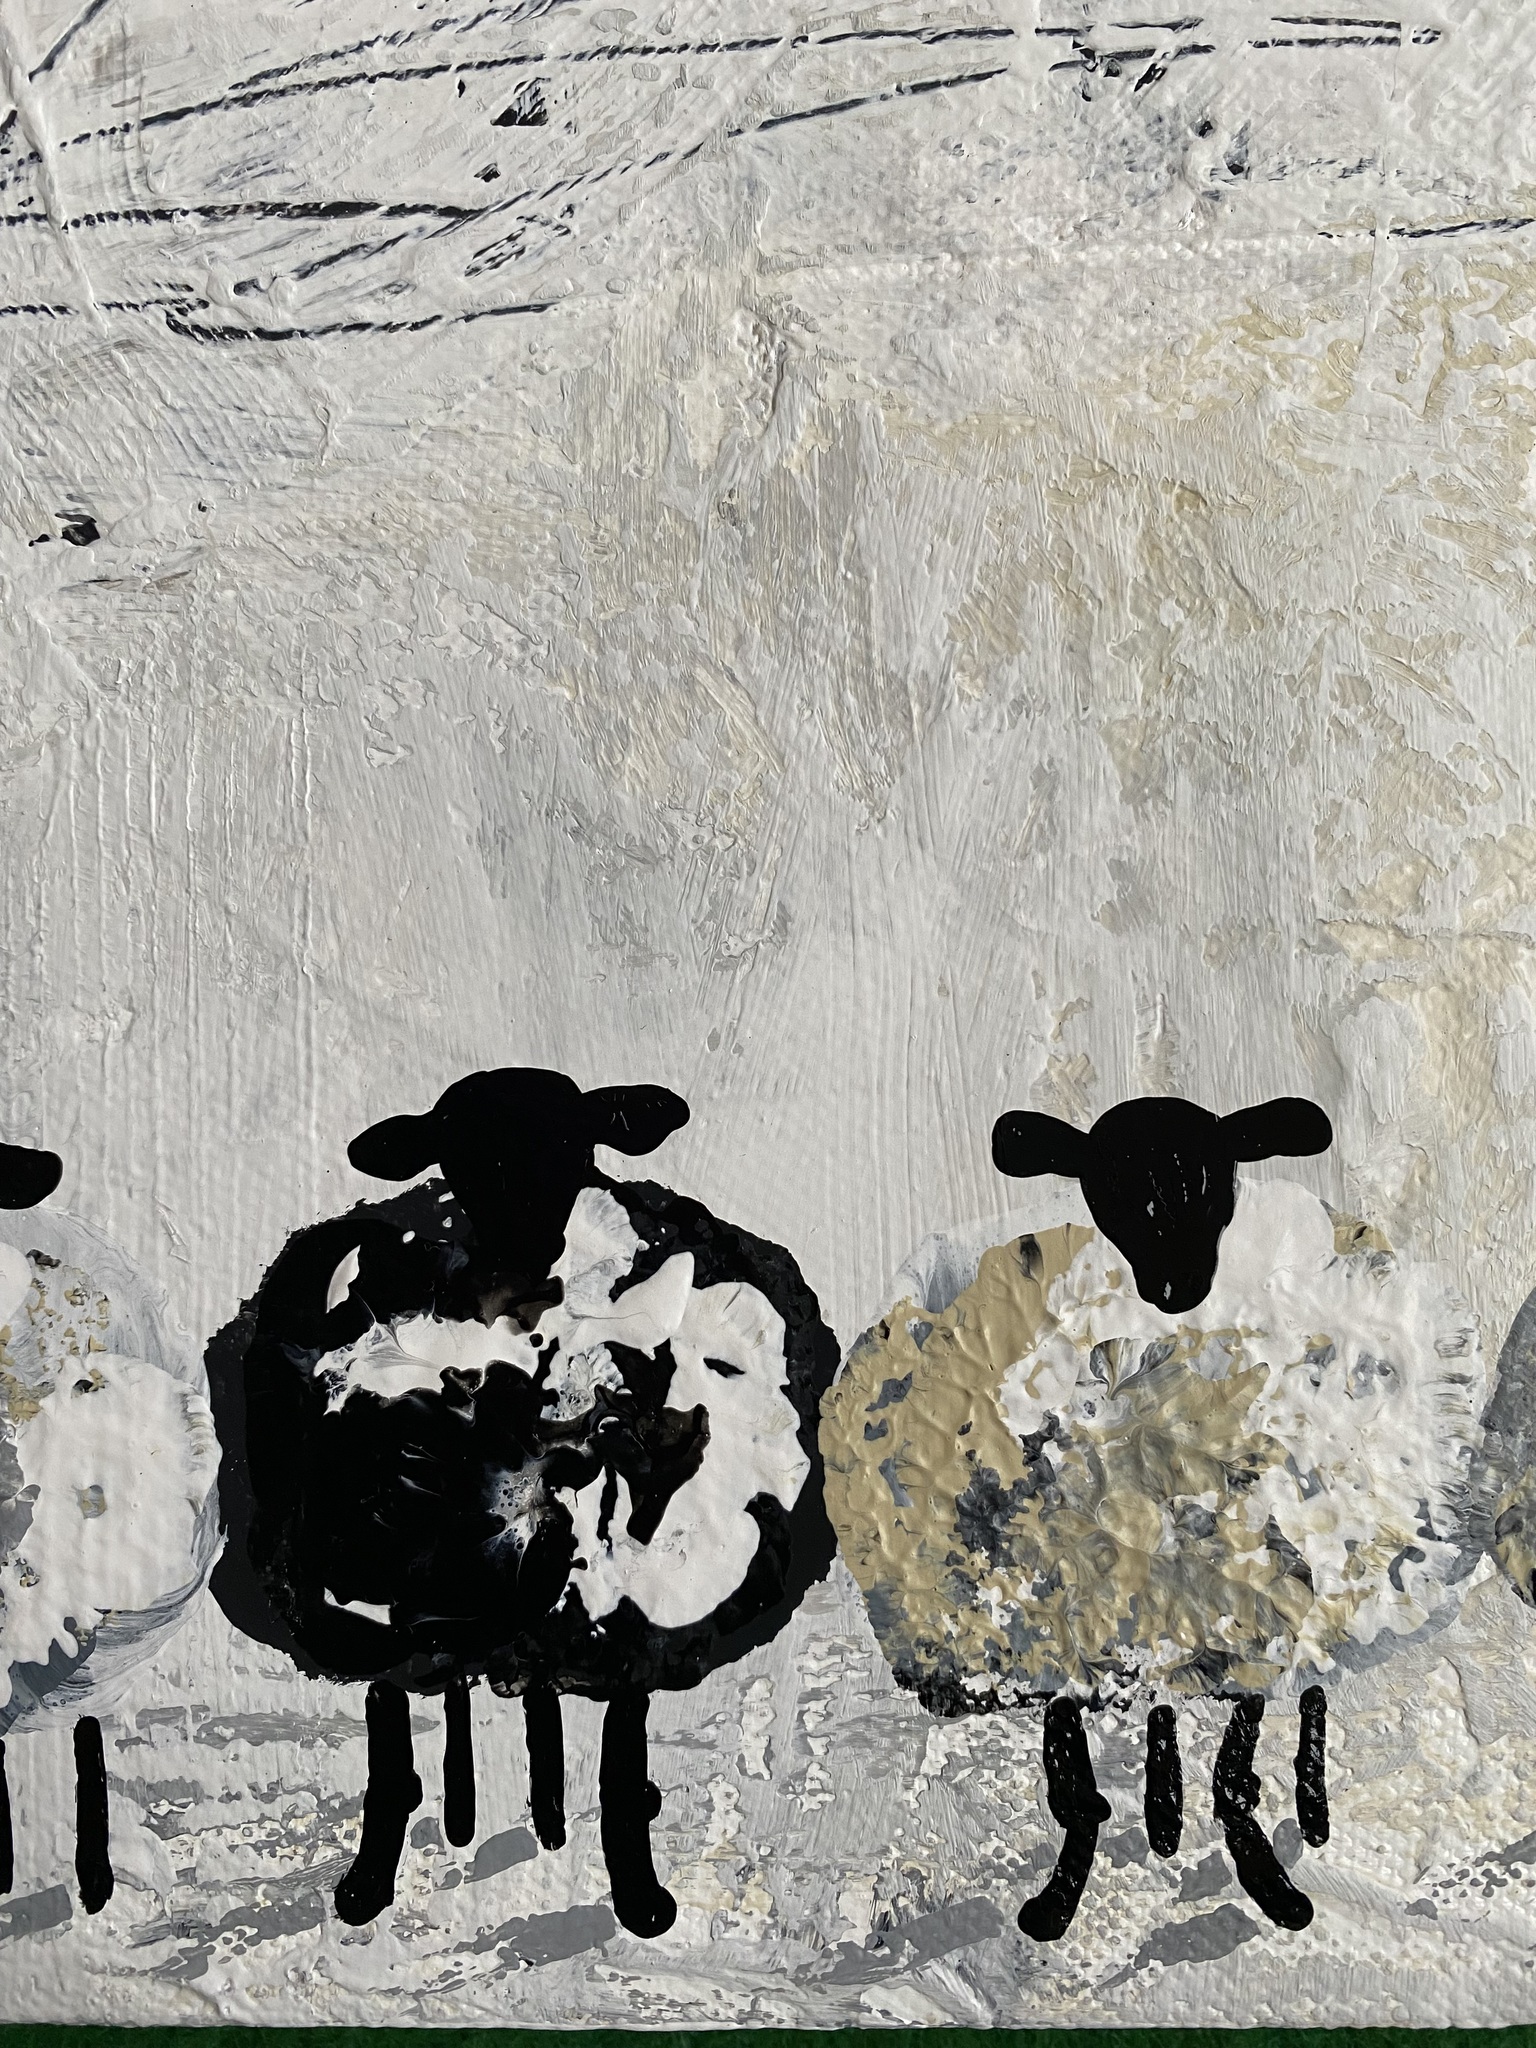 Fårmotiv av fårkonstnären C.Brüggmann som målat denna fabolösa fårtavla med får i svart, grått, vitt och beige.